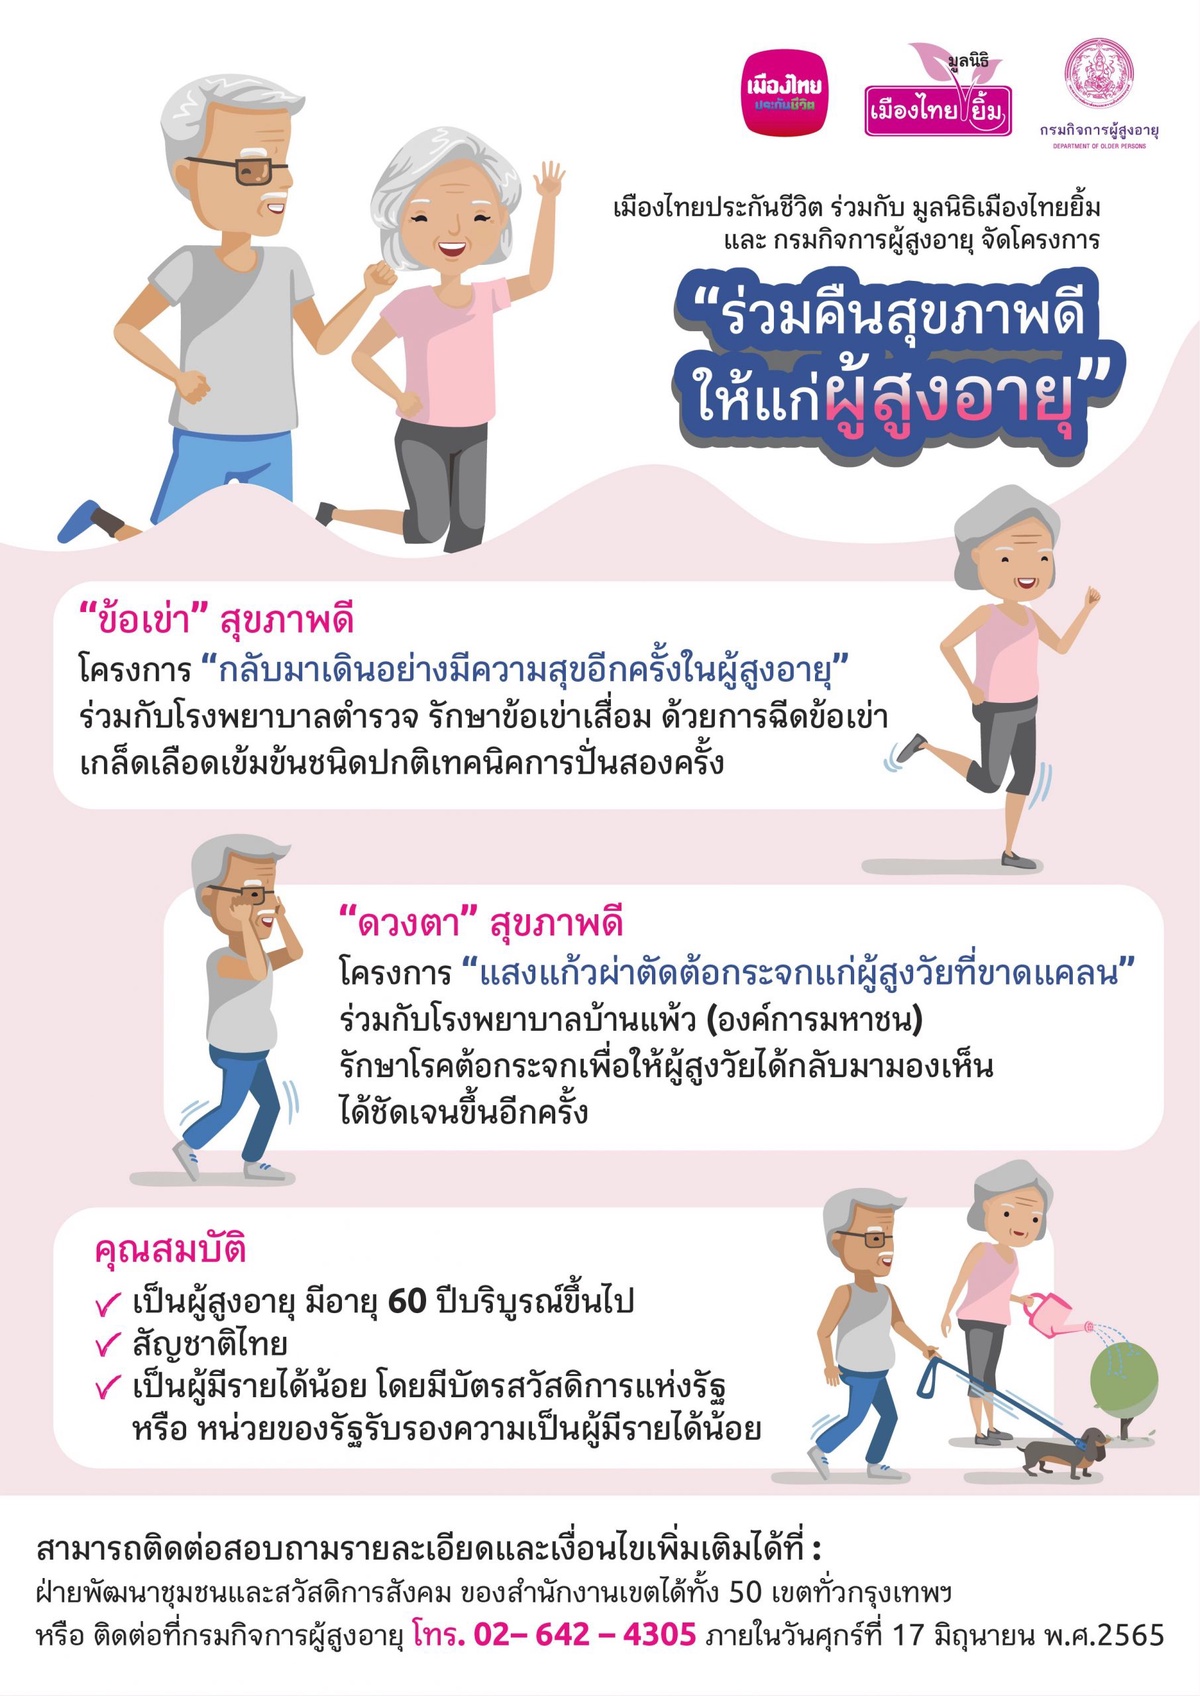 เมืองไทยประกันชีวิต ร่วมกับ มูลนิธิเมืองไทยยิ้ม และกรมกิจการผู้สูงอายุ จัดโครงการ ร่วมคืนสุขภาพดีให้แก่ผู้สูงอายุ